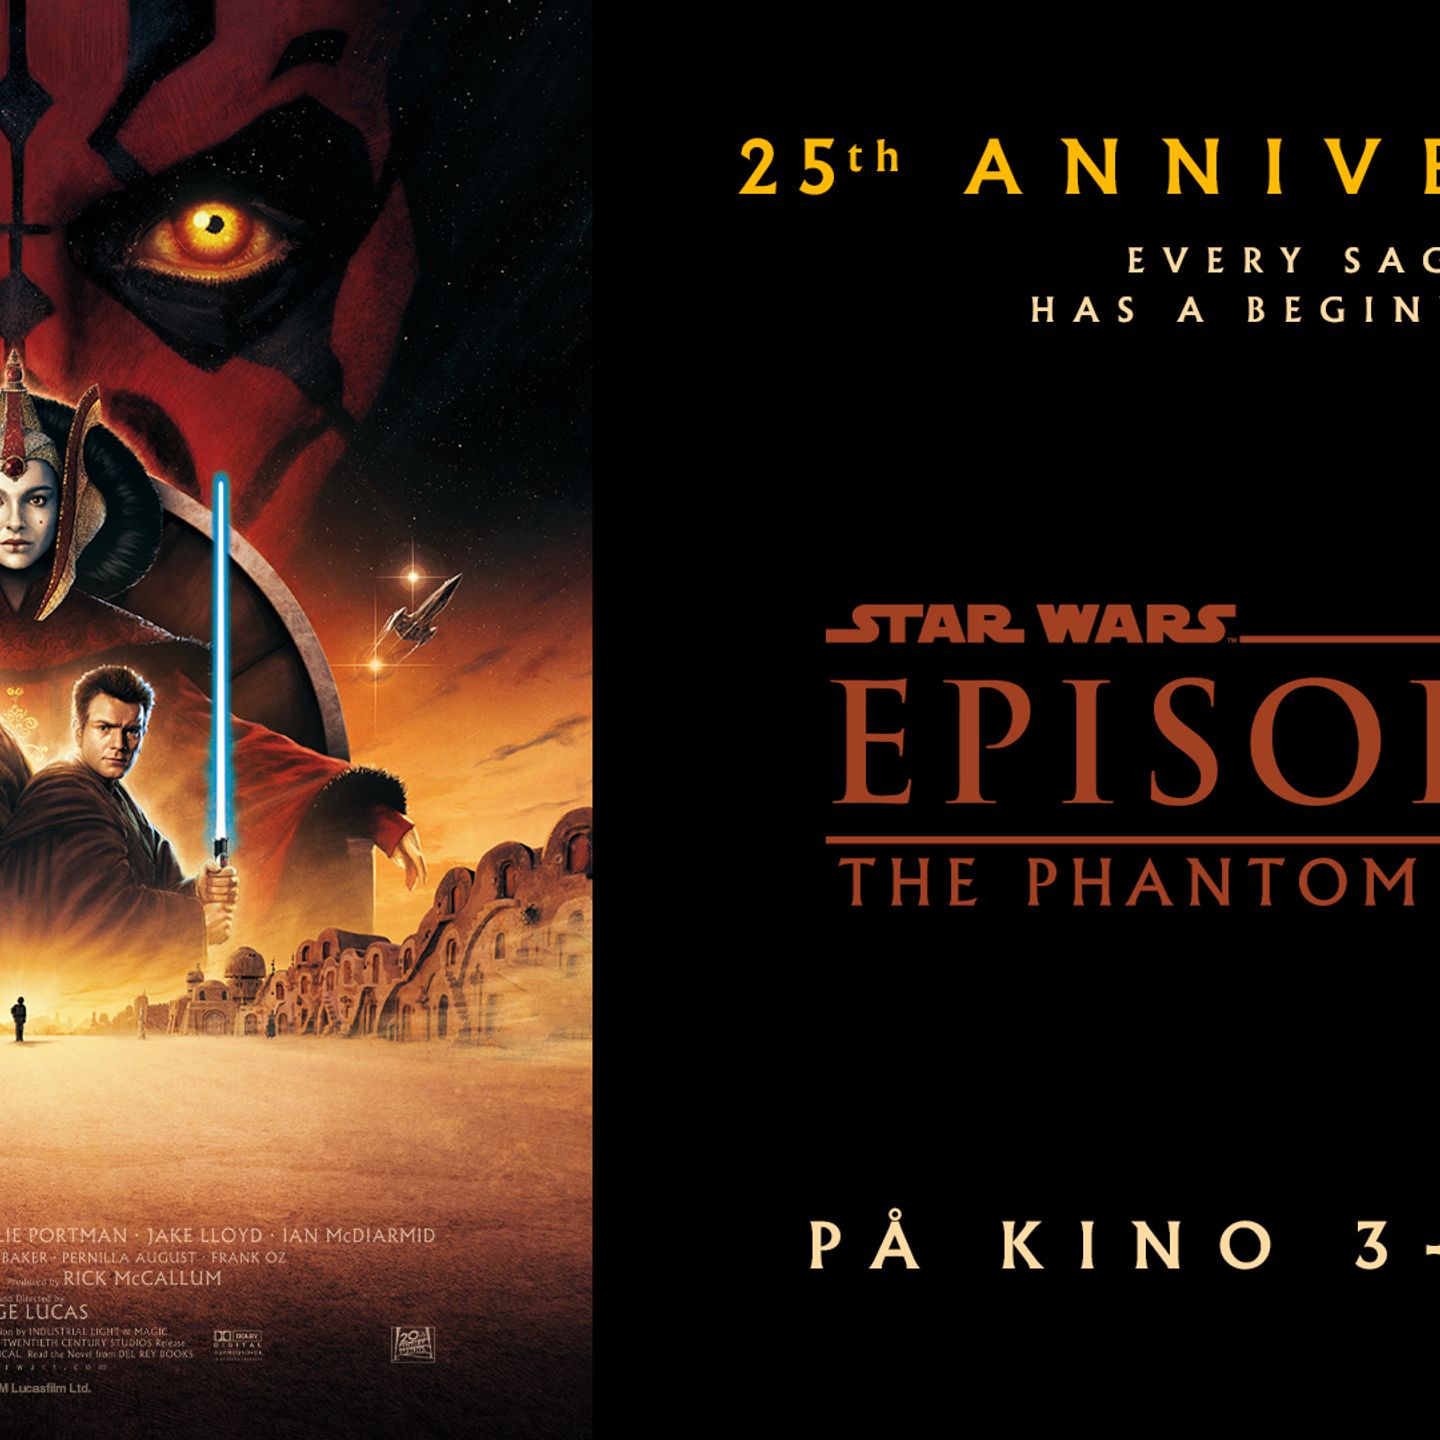 Plakat fra Star Wars Episode I: The Phantom Menace